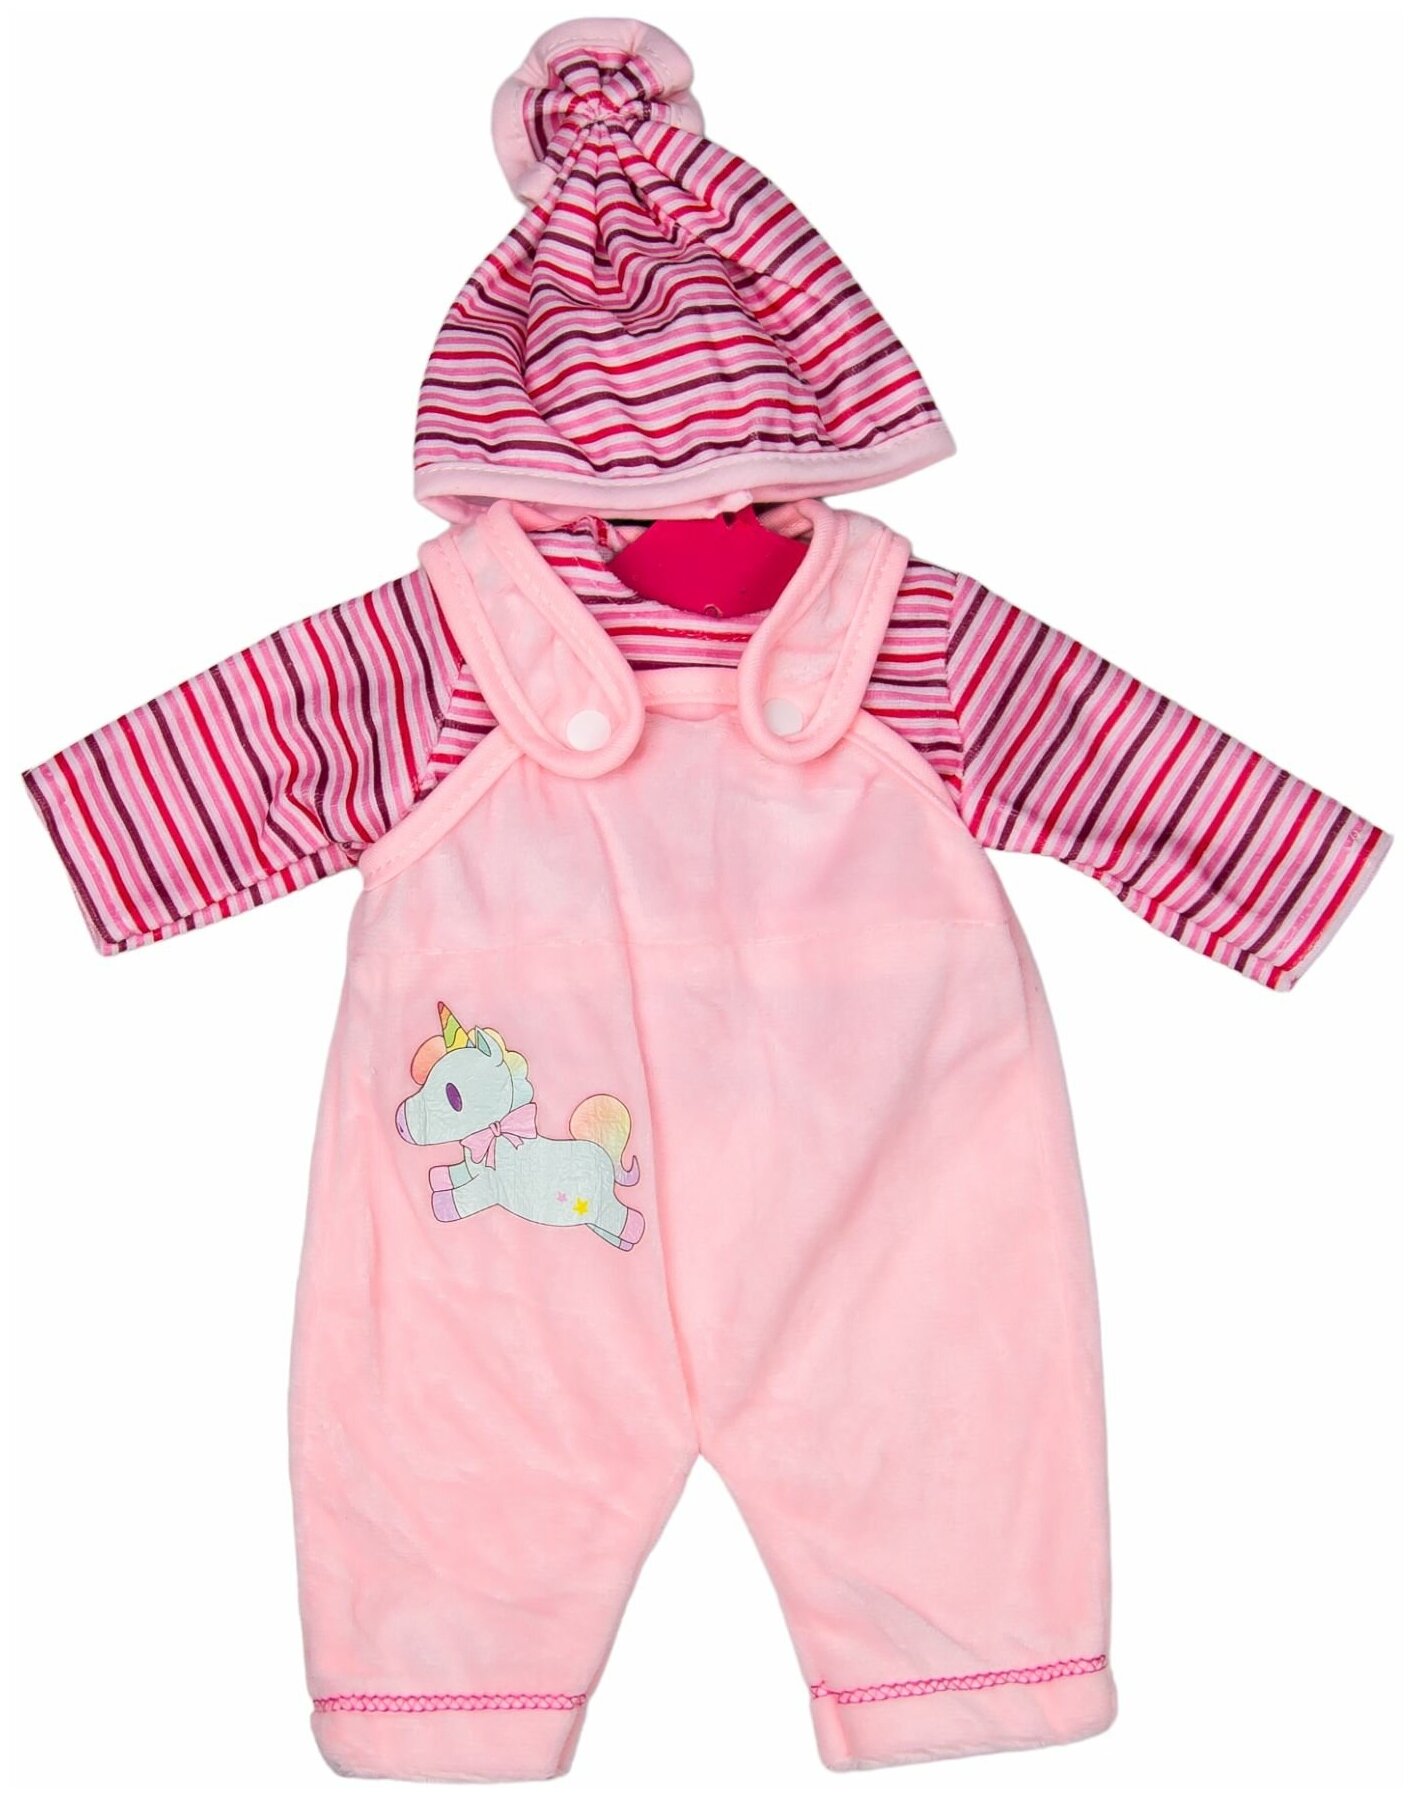 Одежда для куклы ростом 35 - 42 см, розовый комбинезон с единорогом, майка, шапка для пупса, GC18-54